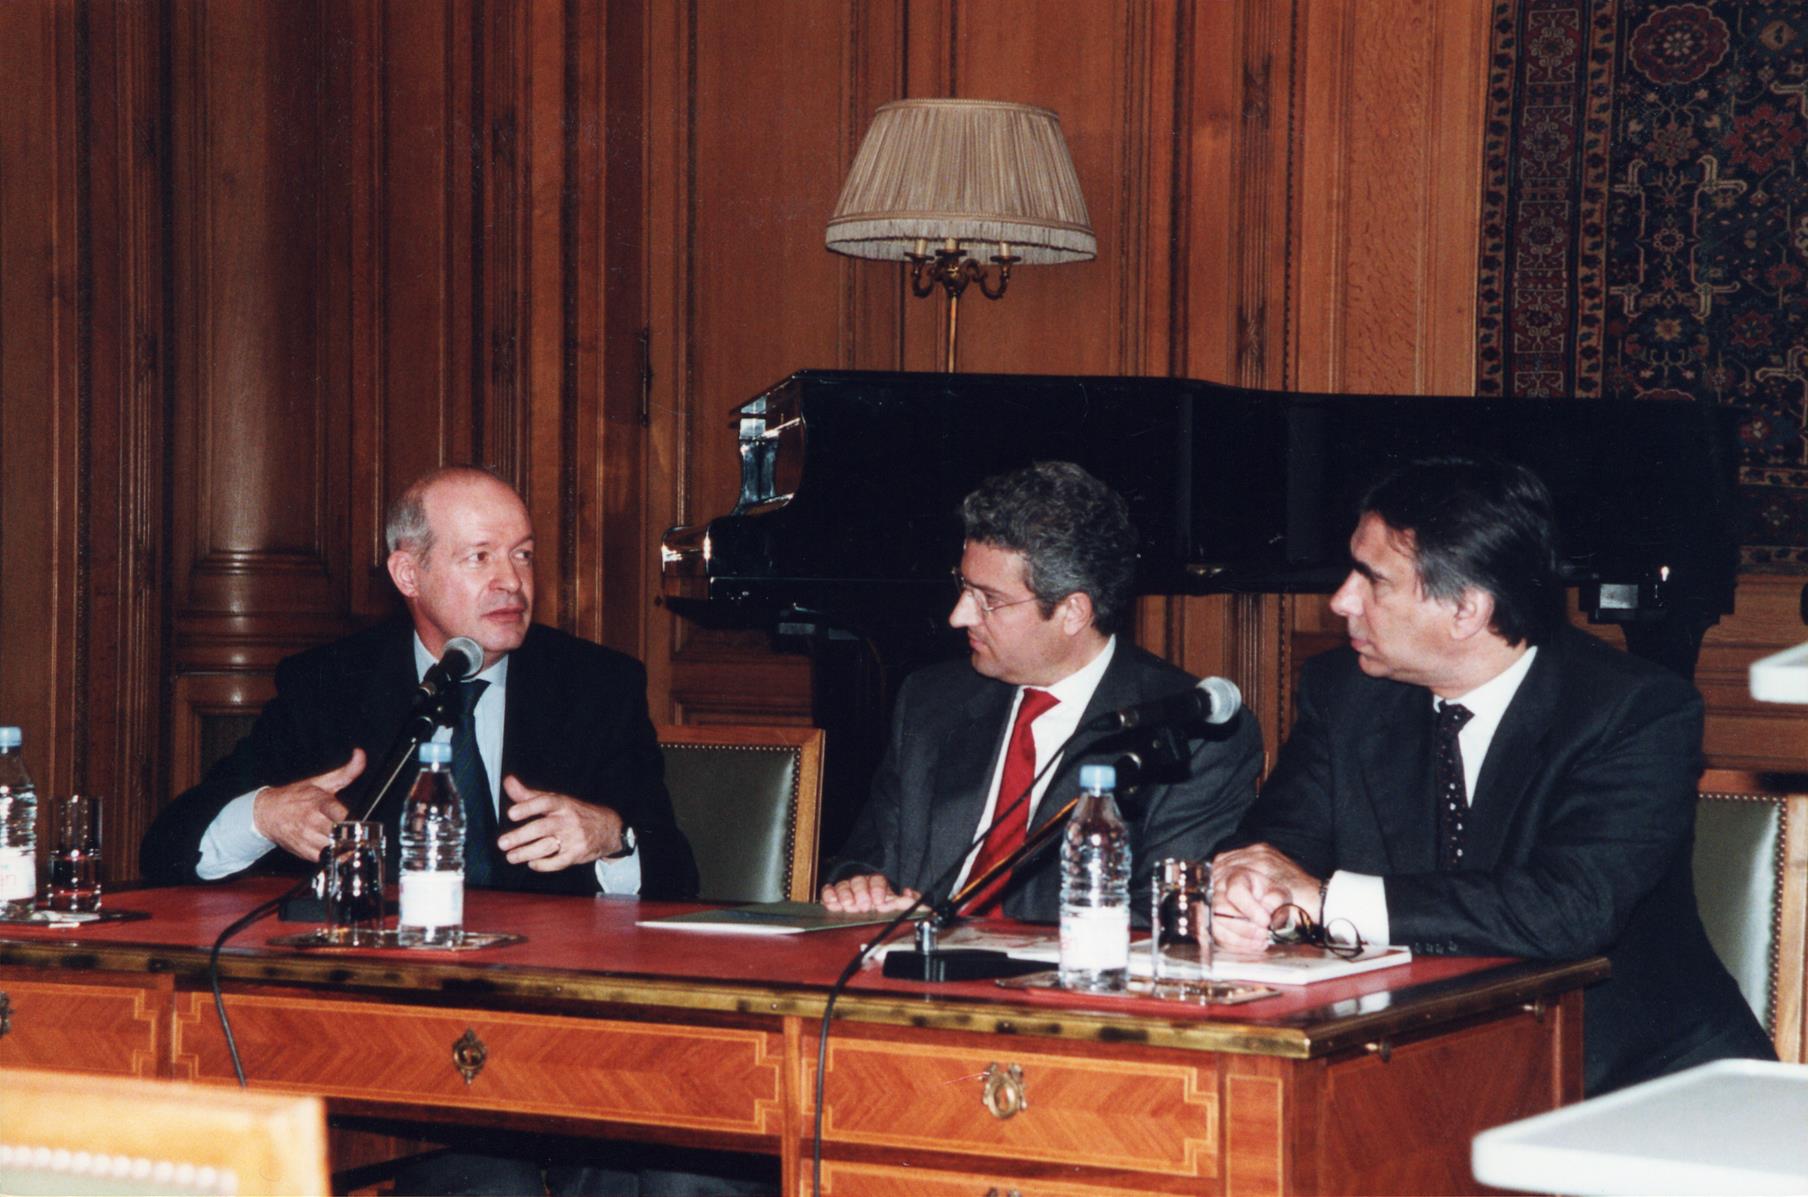 Conferência de imprensa. Pierre Arizzoli-Clémentel, Francisco Bettencourt e João Castel-Branco Pereira (da esq. para a dir.)